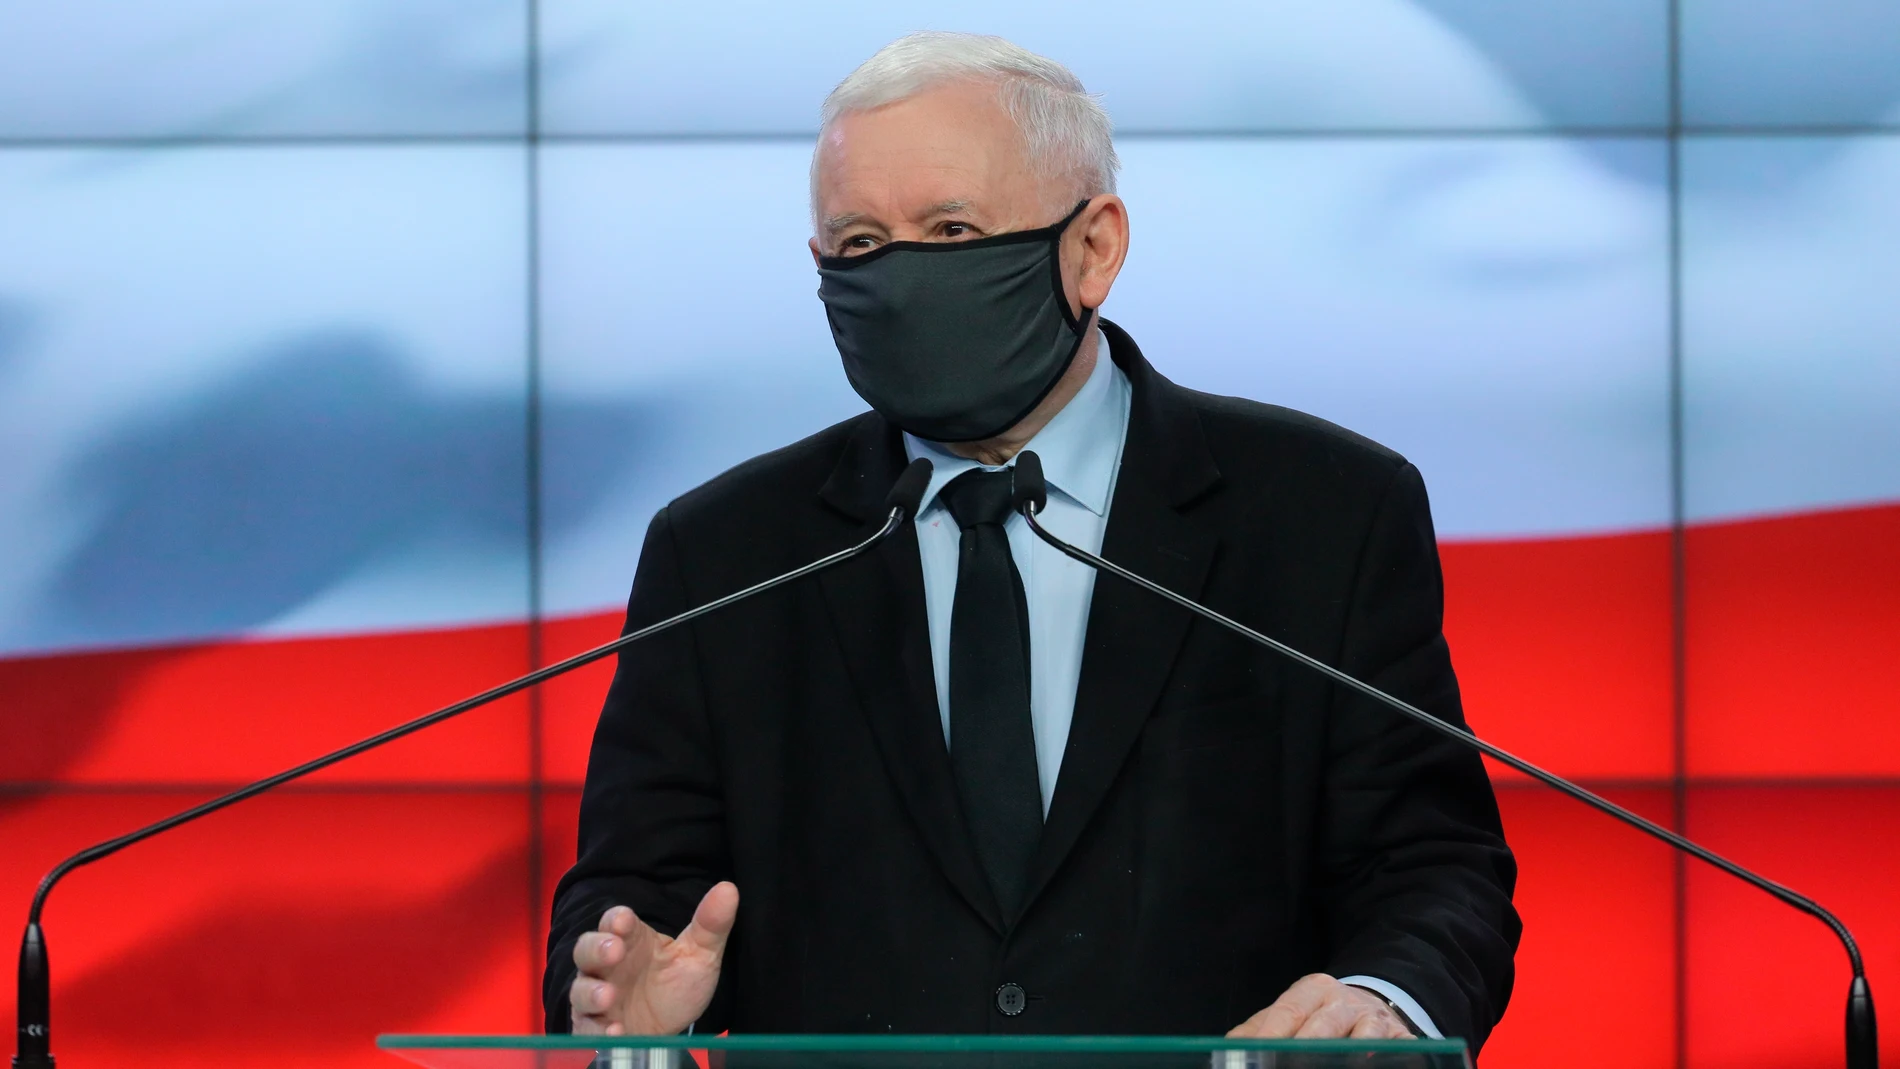 El líder del partido ultraconservador polaco Ley y Justicia (PiS), Jaroslaw Kaczynski